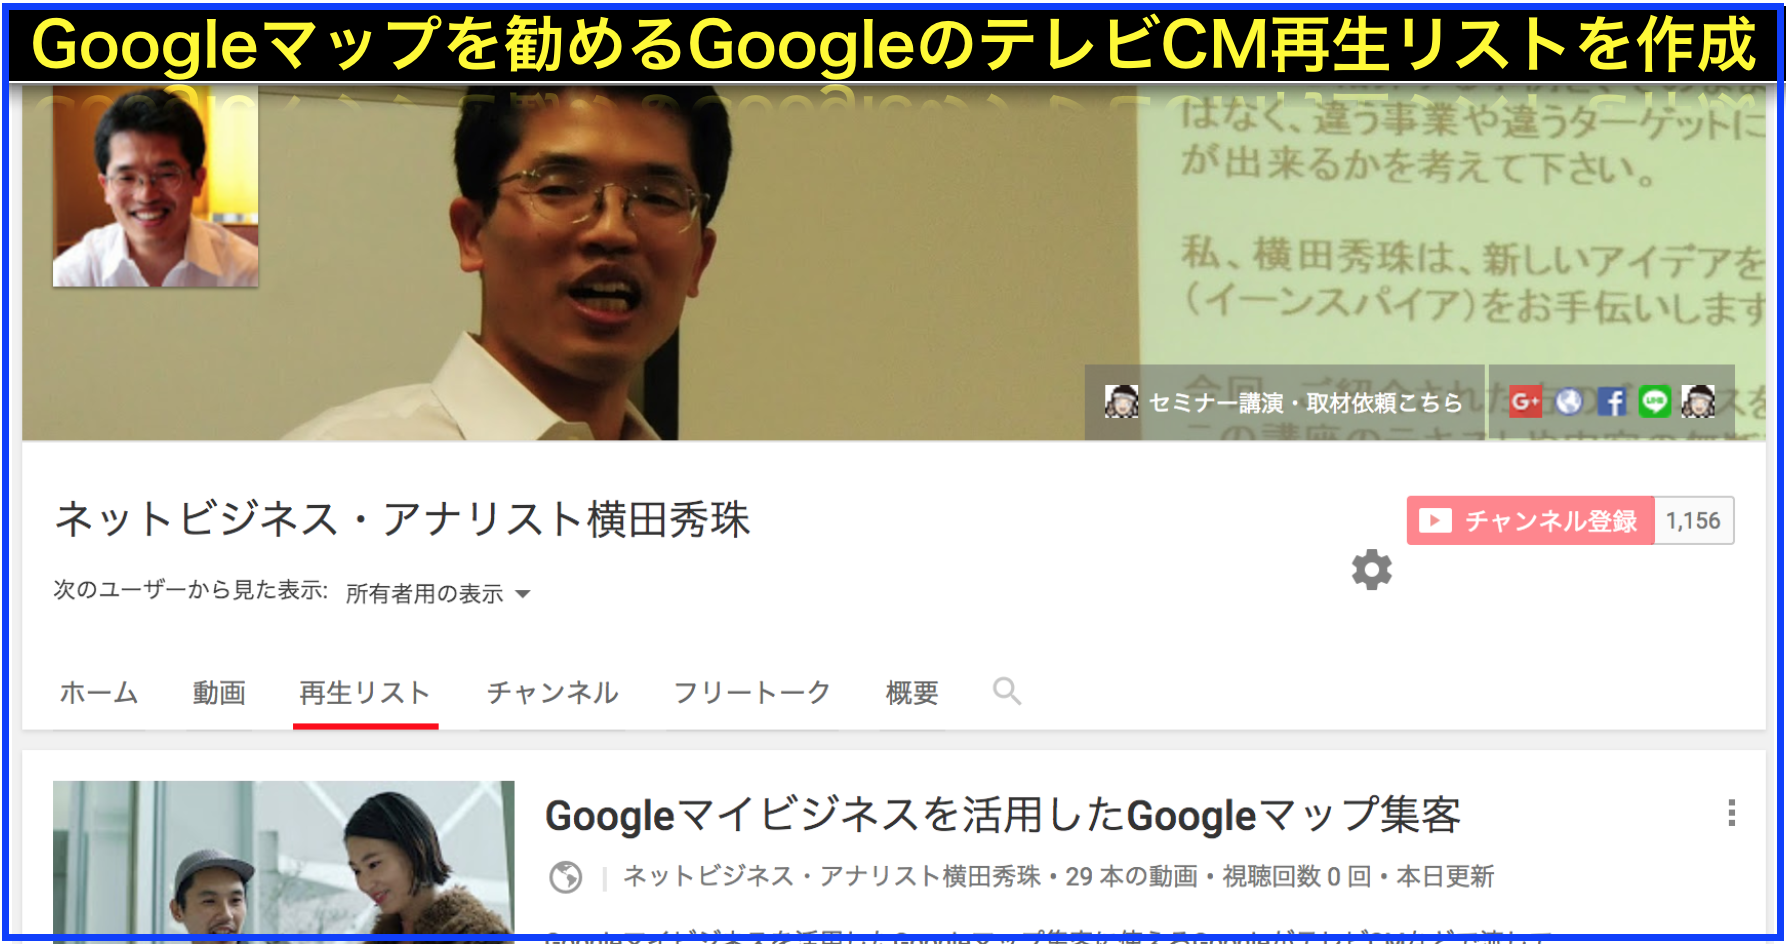 GoogleマップのテレビCM一覧Googleマイビジネス活用事例